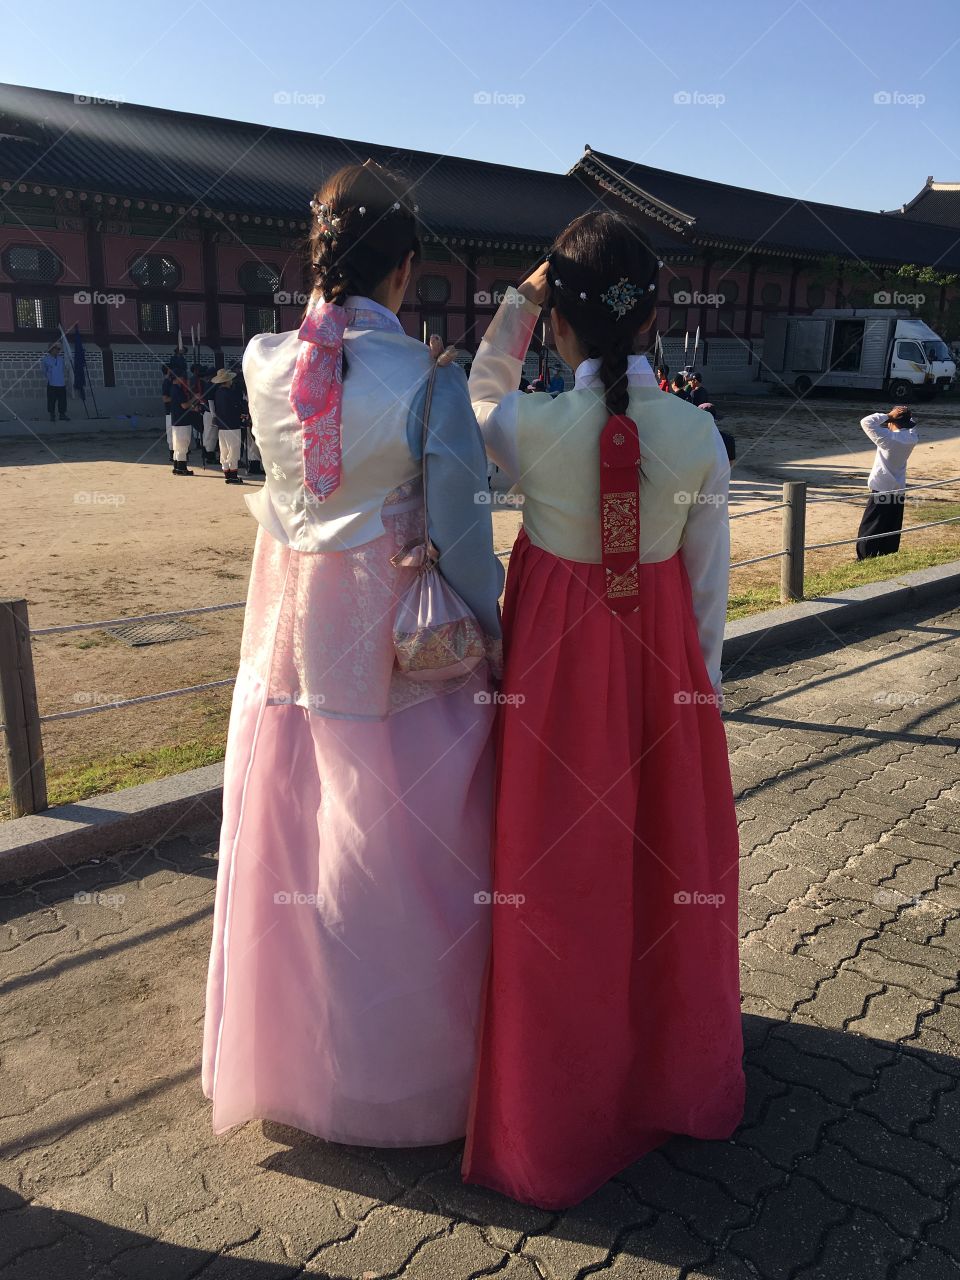 Korean girls